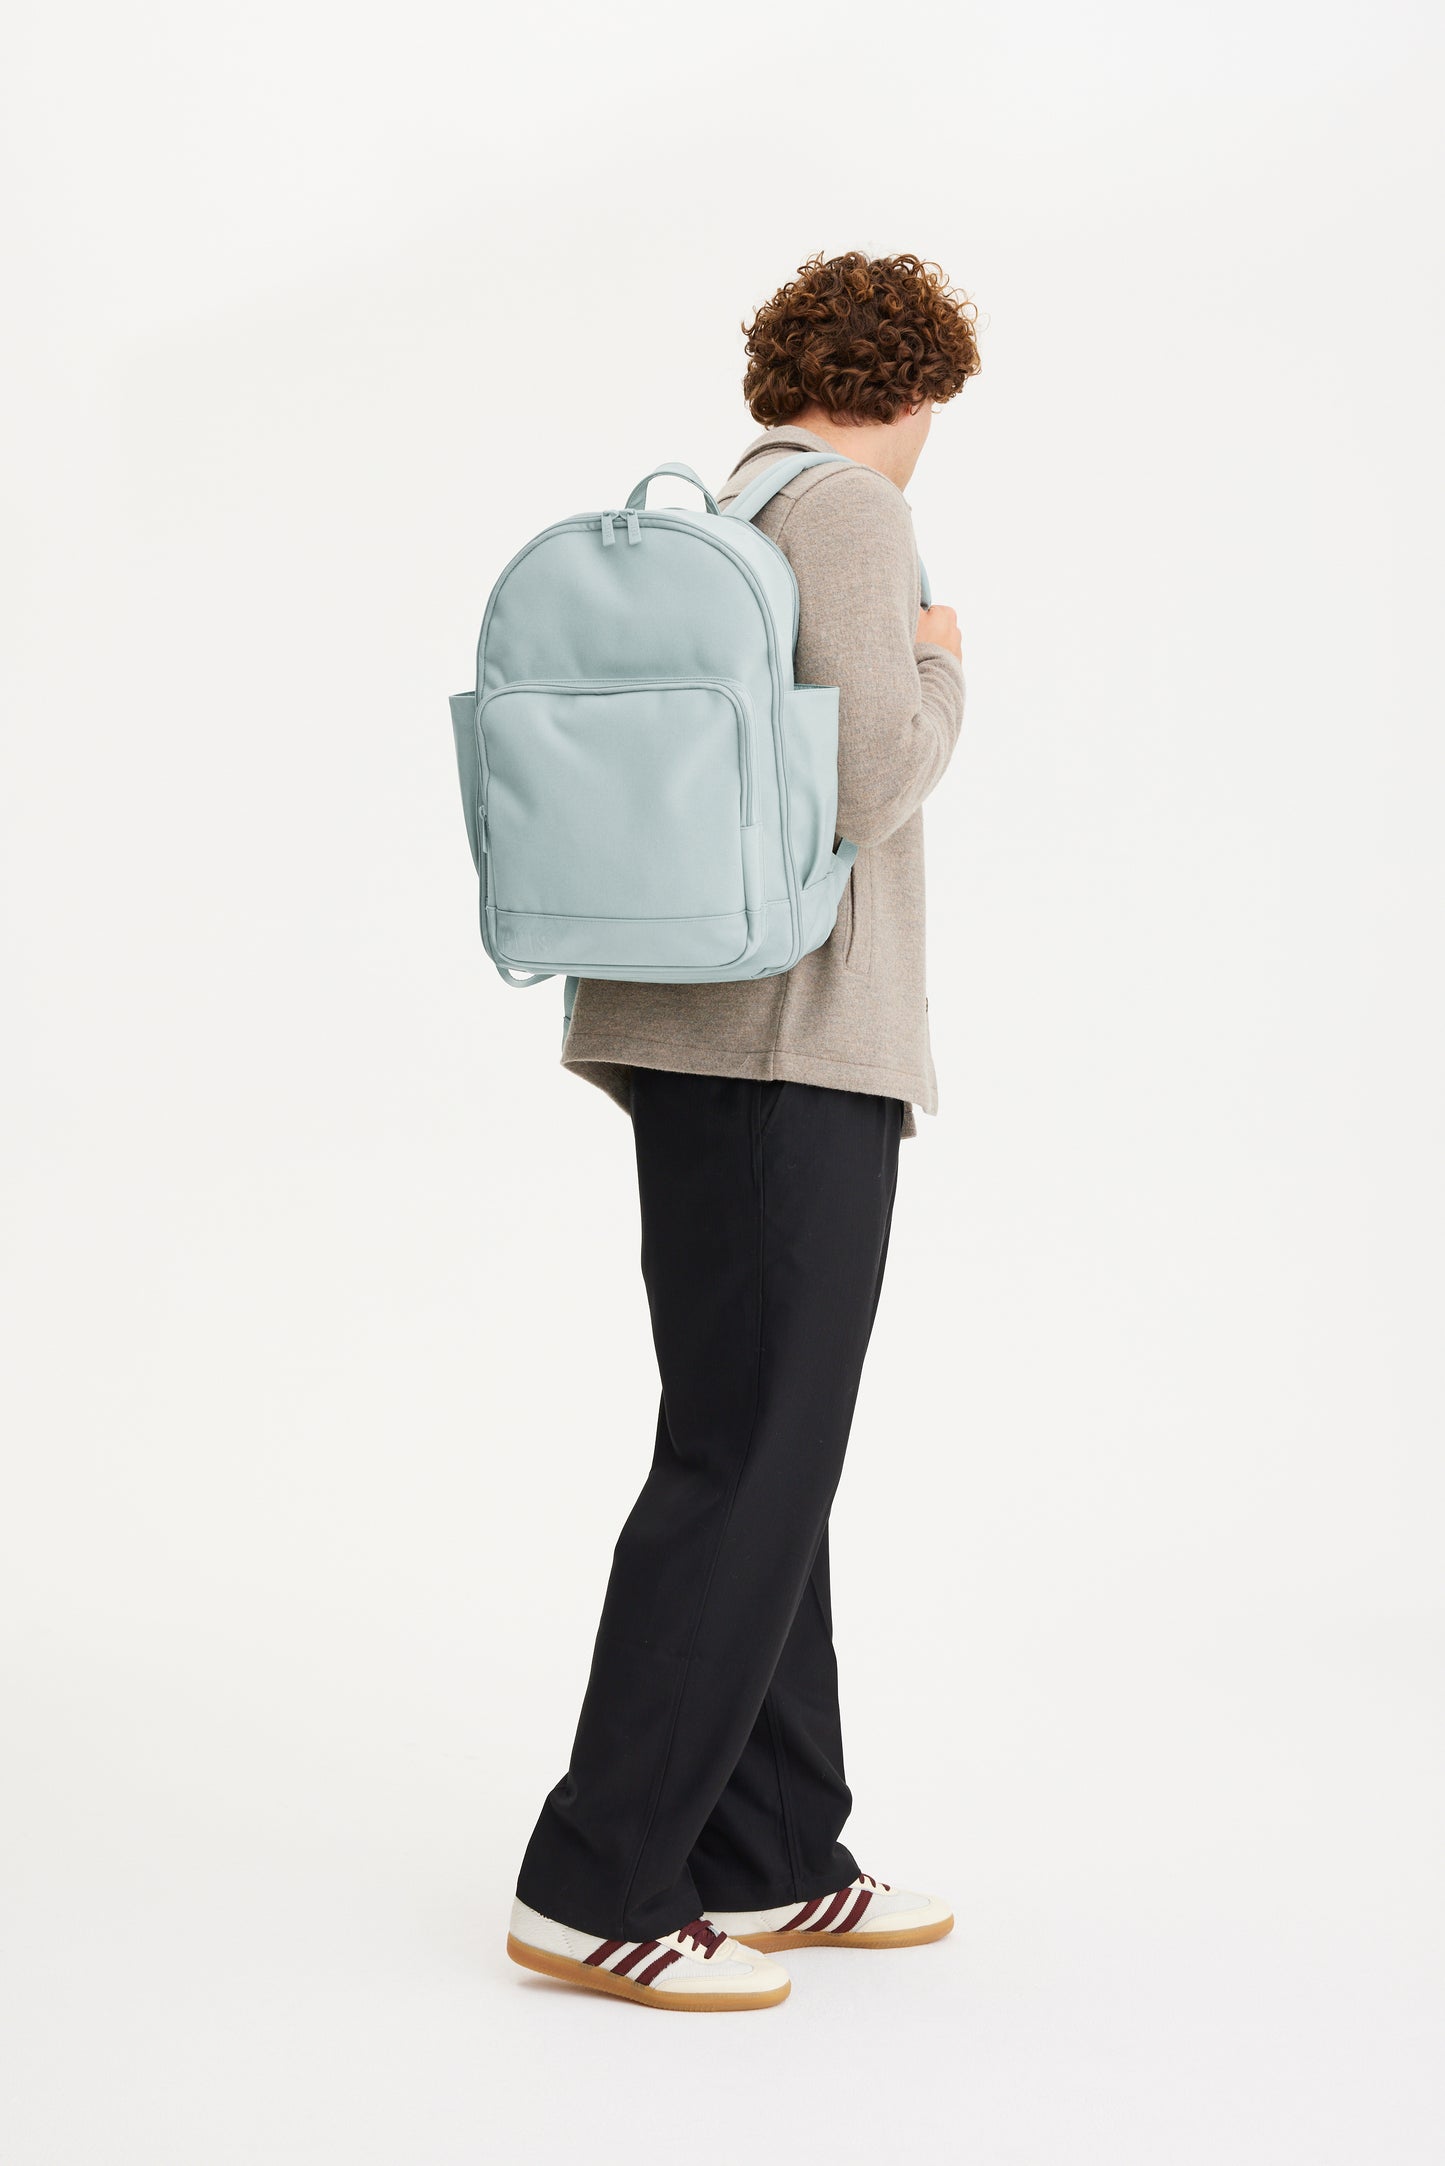 The Backpack in Slate